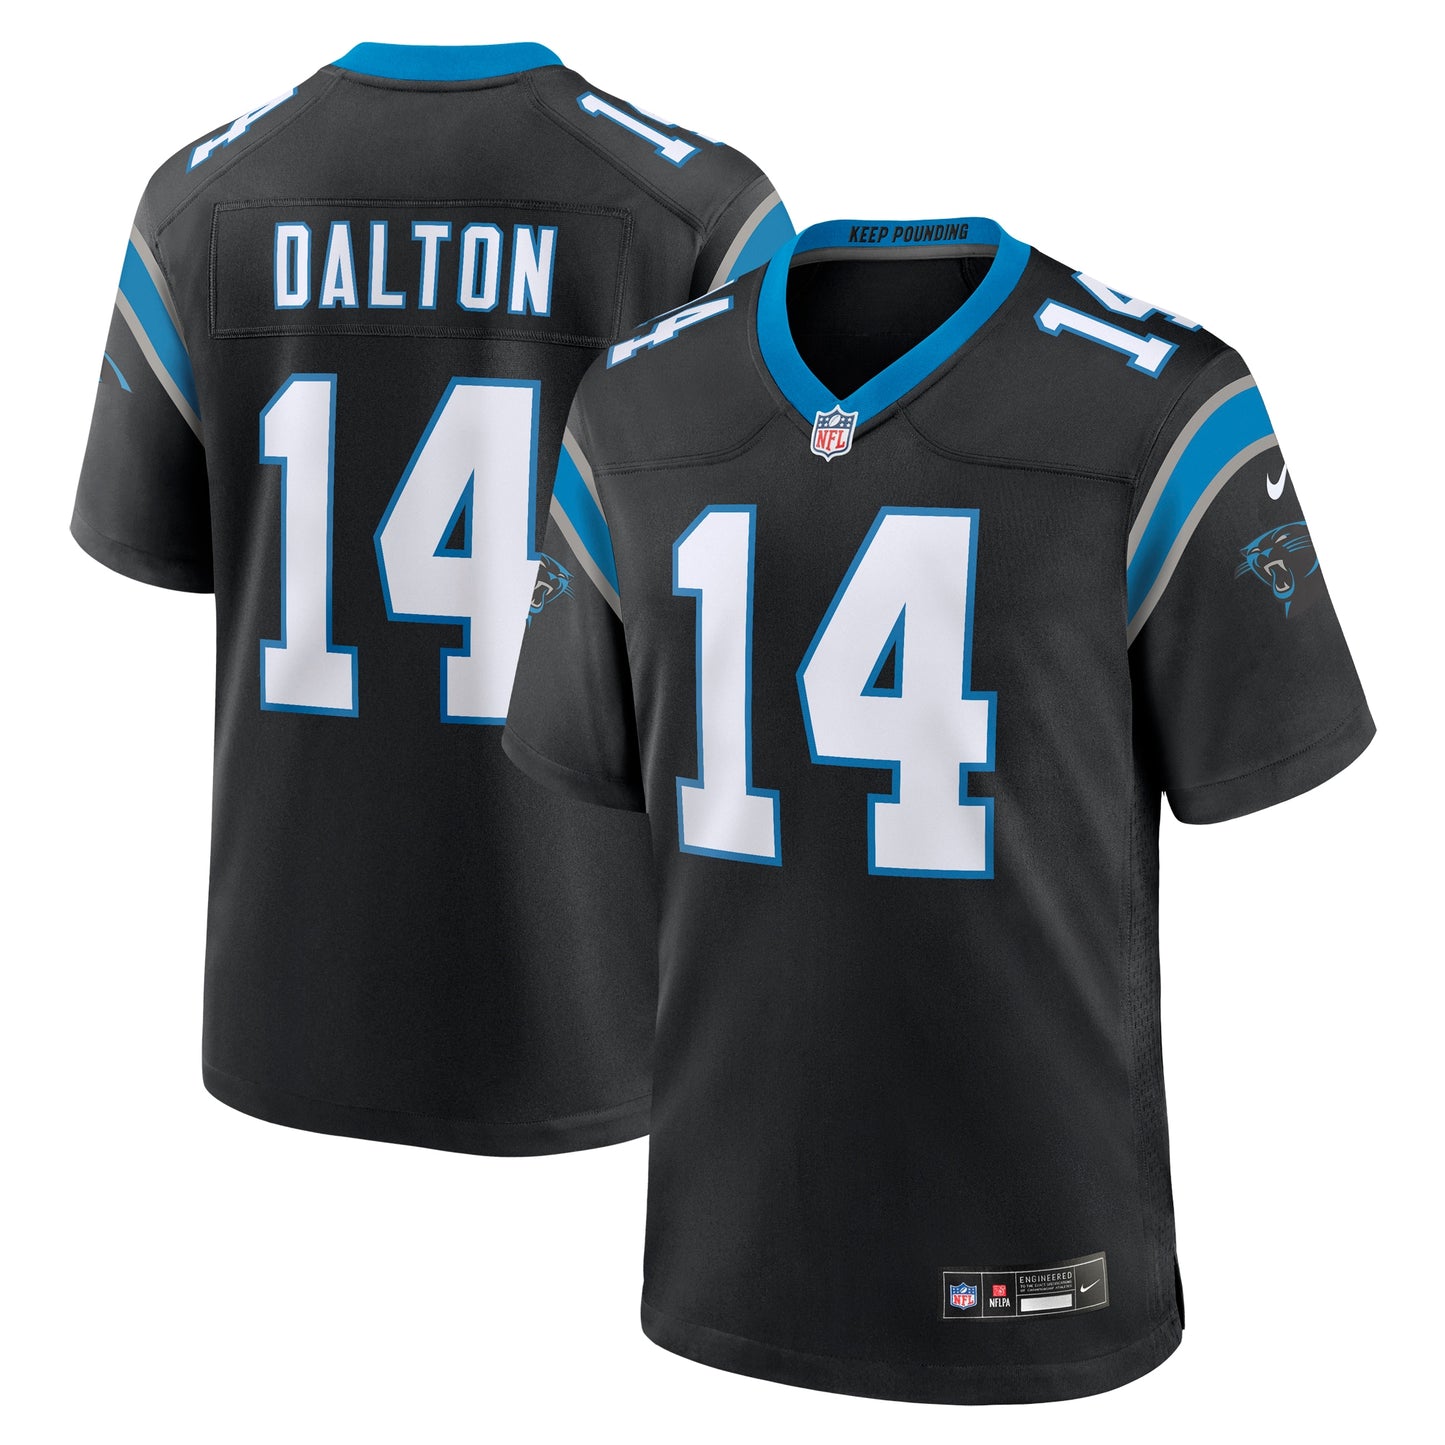 Andy Dalton Carolina Panthers Nike Team Game Jersey - Black